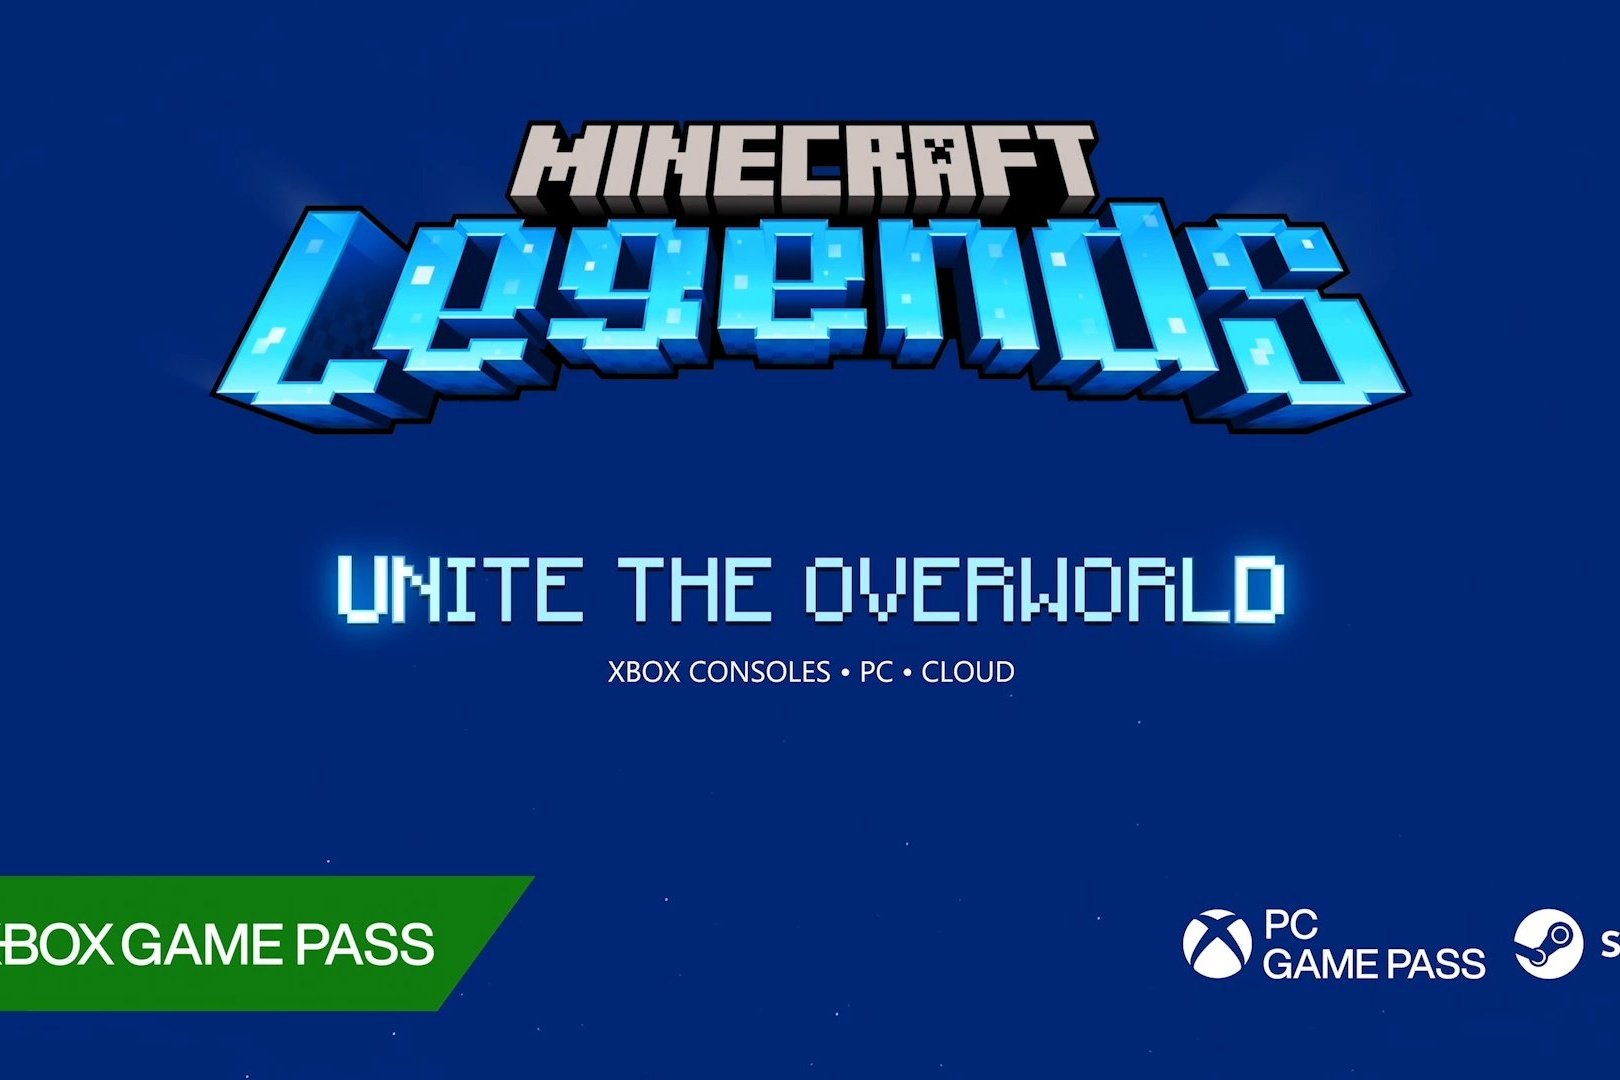 Como Minecraft Legends transforma ideias clássicas de Minecraft em novas  formas de jogabilidade - Xbox Wire em Português